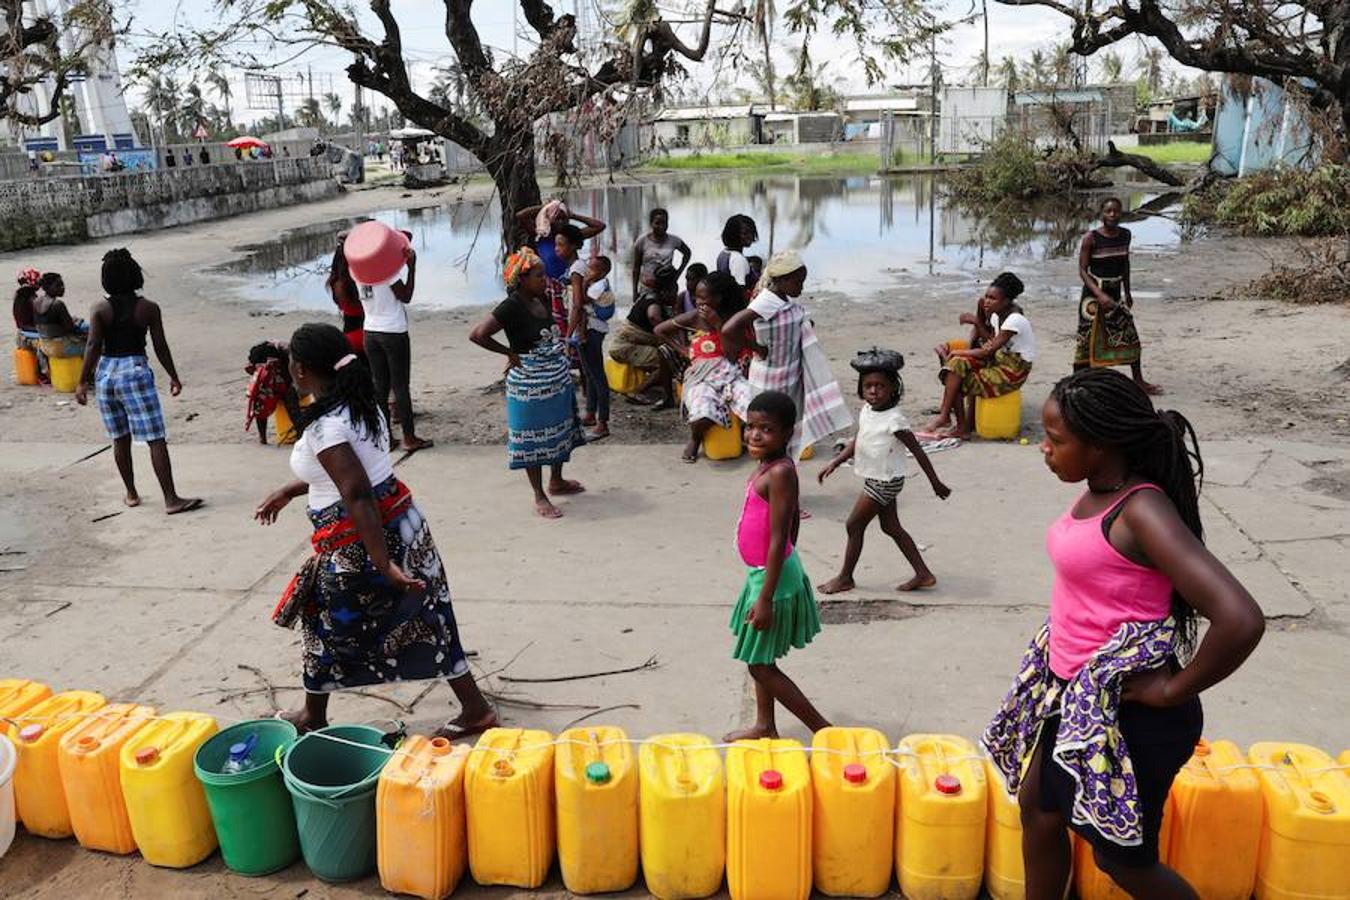 El ciclón Idai, que ha devastado poblaciones enteras a su paso por Mozambique, Malawi y Zimbabue, ha causado al menos 2,8 millones de afectados, según los cálculos que hoy hizo públicos el Programa Mundial de Alimentos (PMA) de las Naciones Unidas.